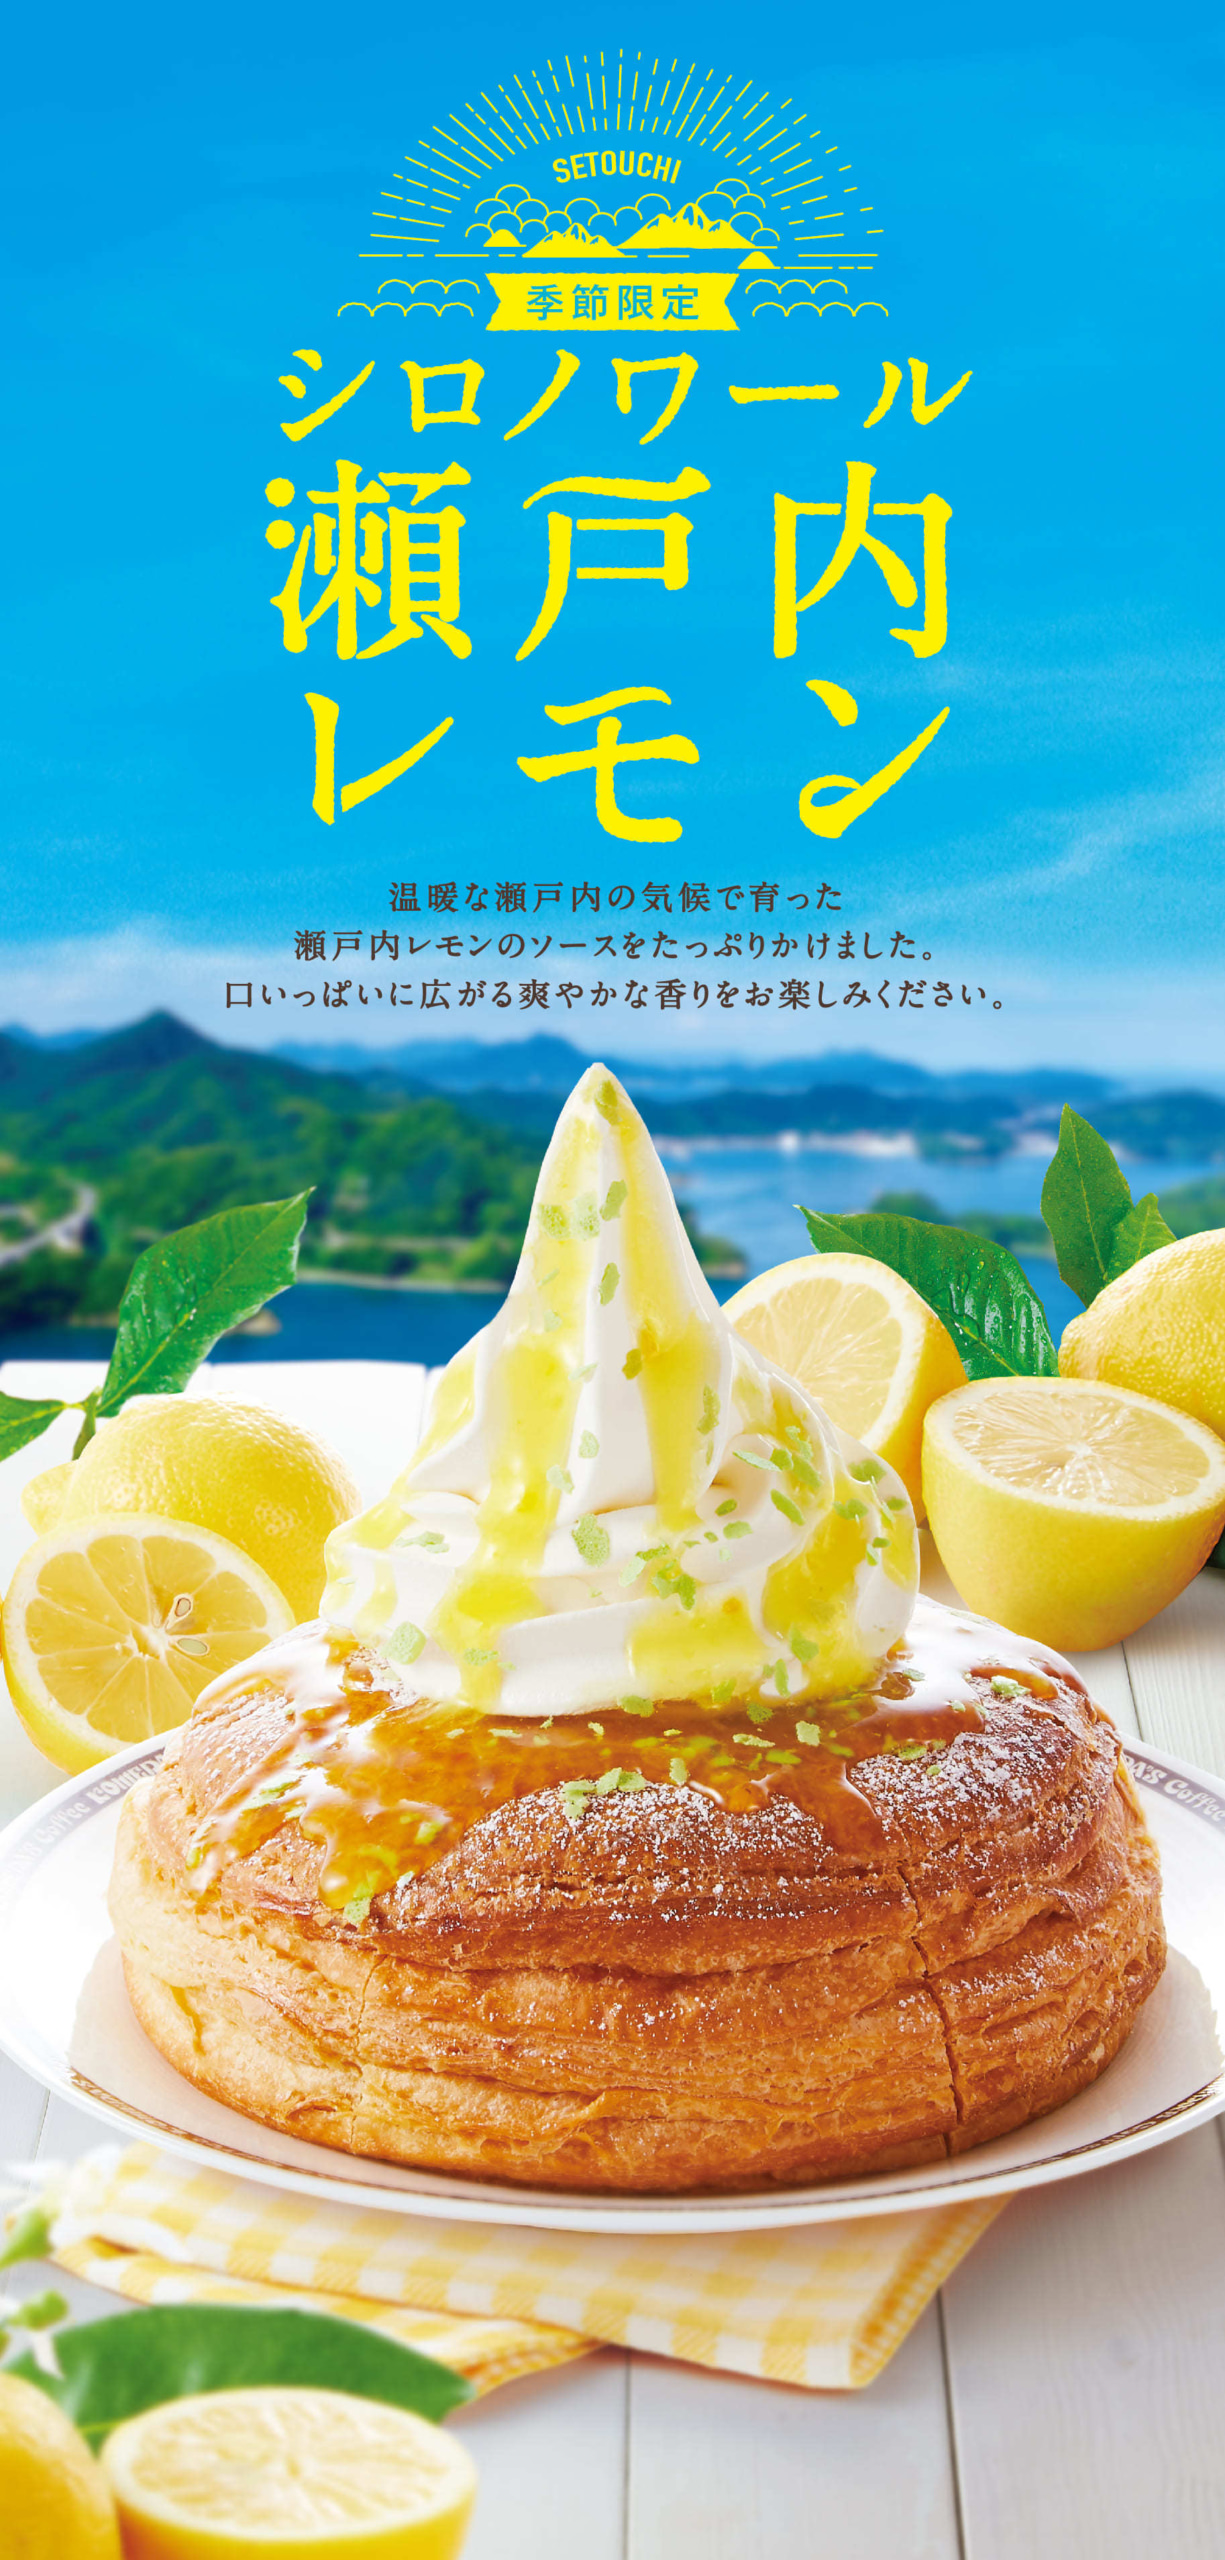 渋谷でアーティスティックなアフタヌーンティーが新登場！和モダンな器とキャッチーな料理が表現する「TORRENT Summer Afternoon Tea」